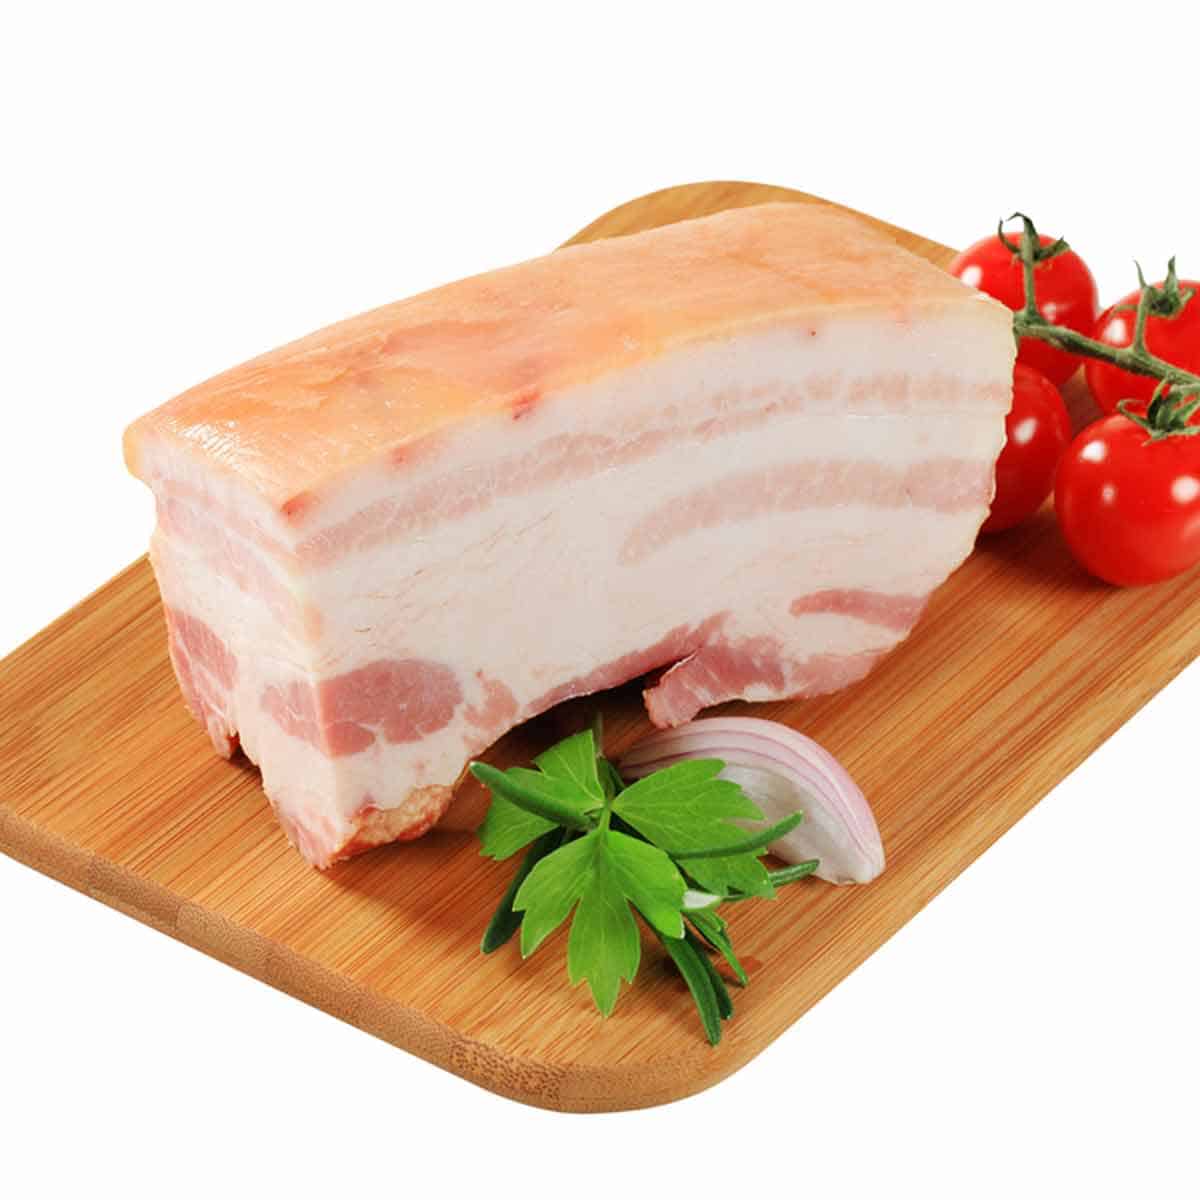 A slab of pork belly on a cutting board.